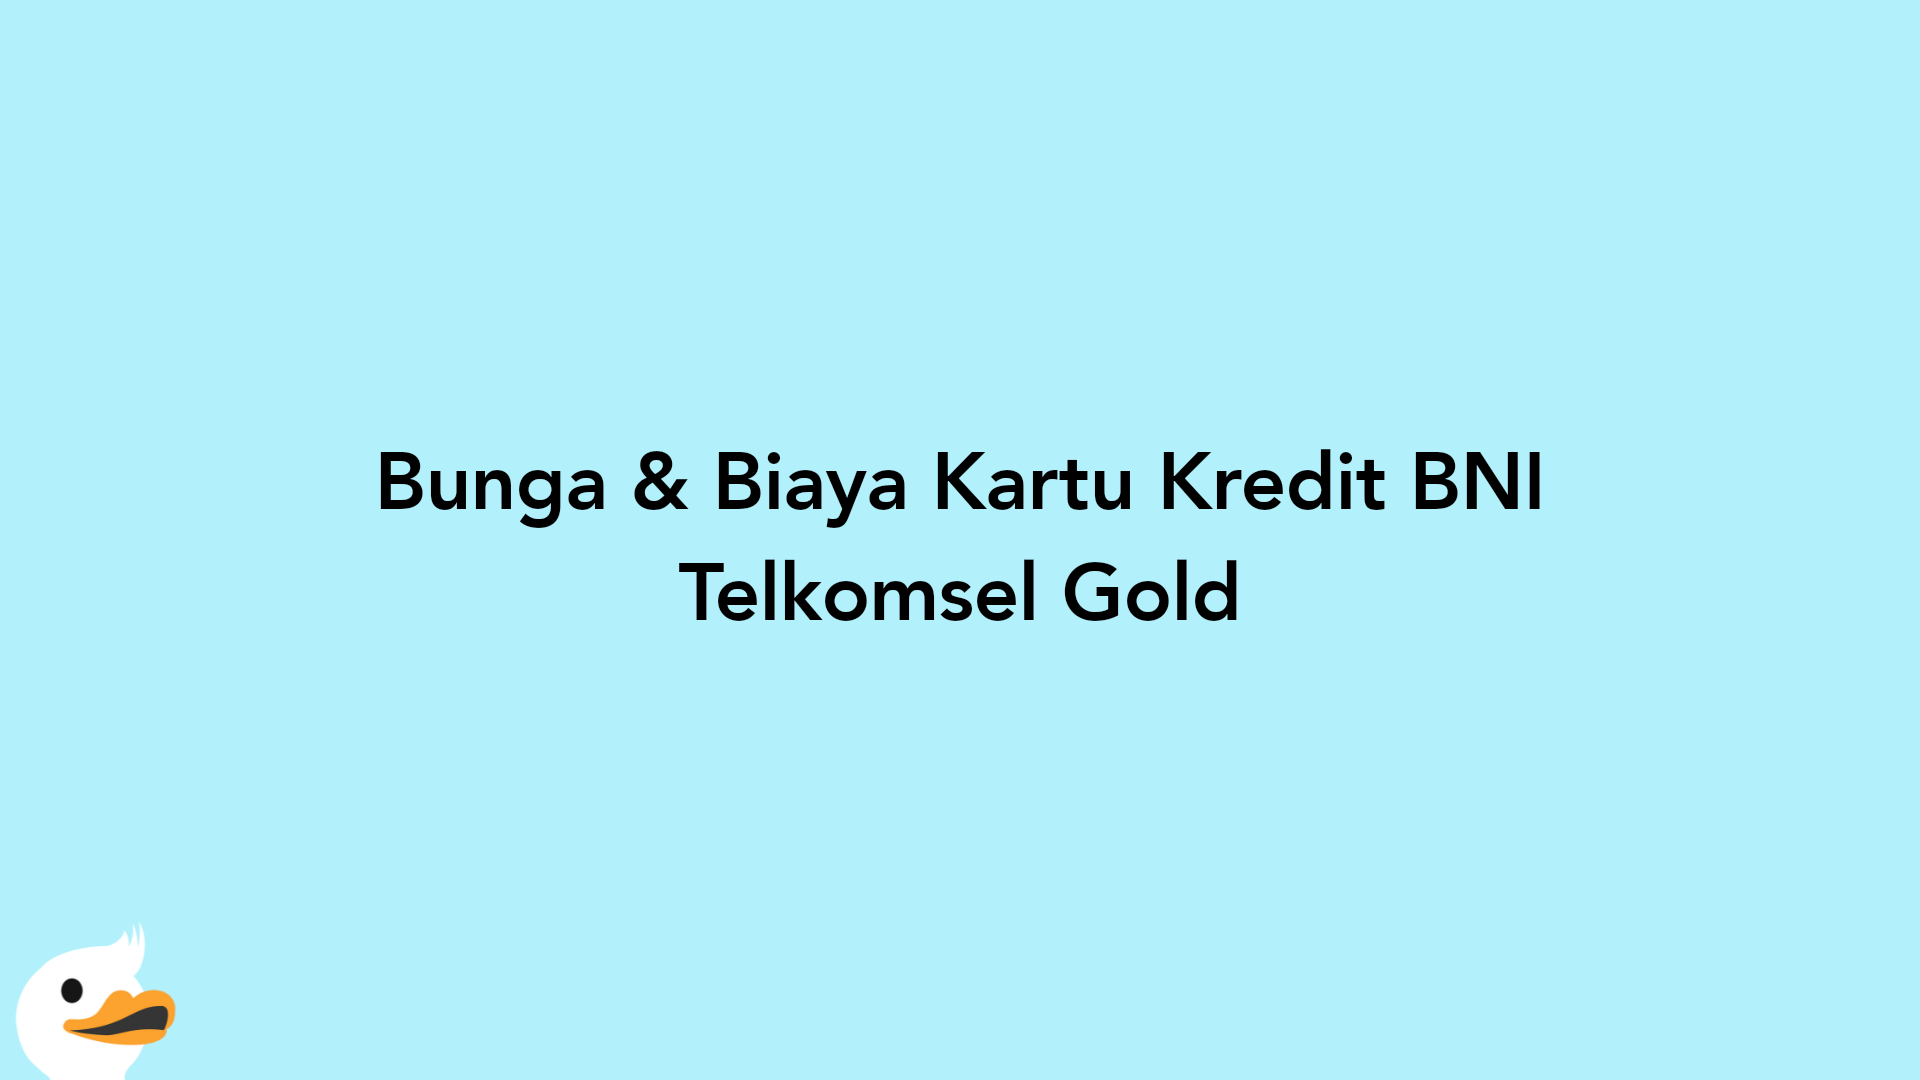 Bunga & Biaya Kartu Kredit BNI Telkomsel Gold